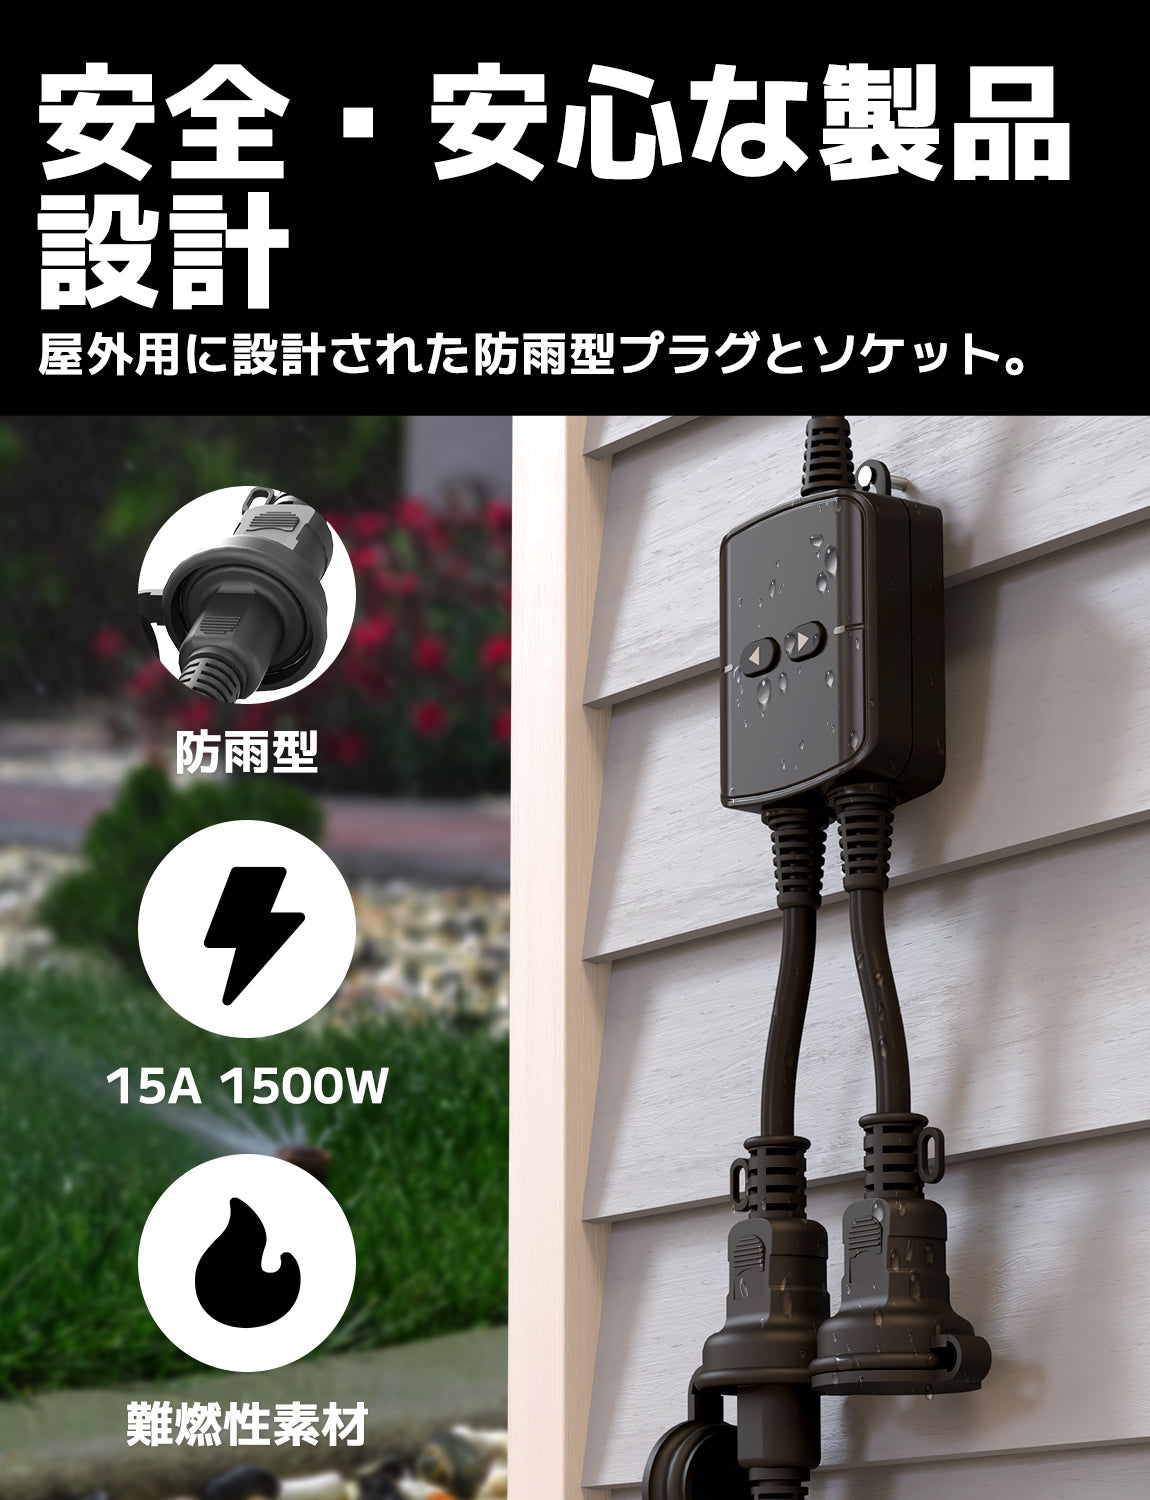 スマートWi-Fi屋外プラグ, MSS620HK (JP Version)